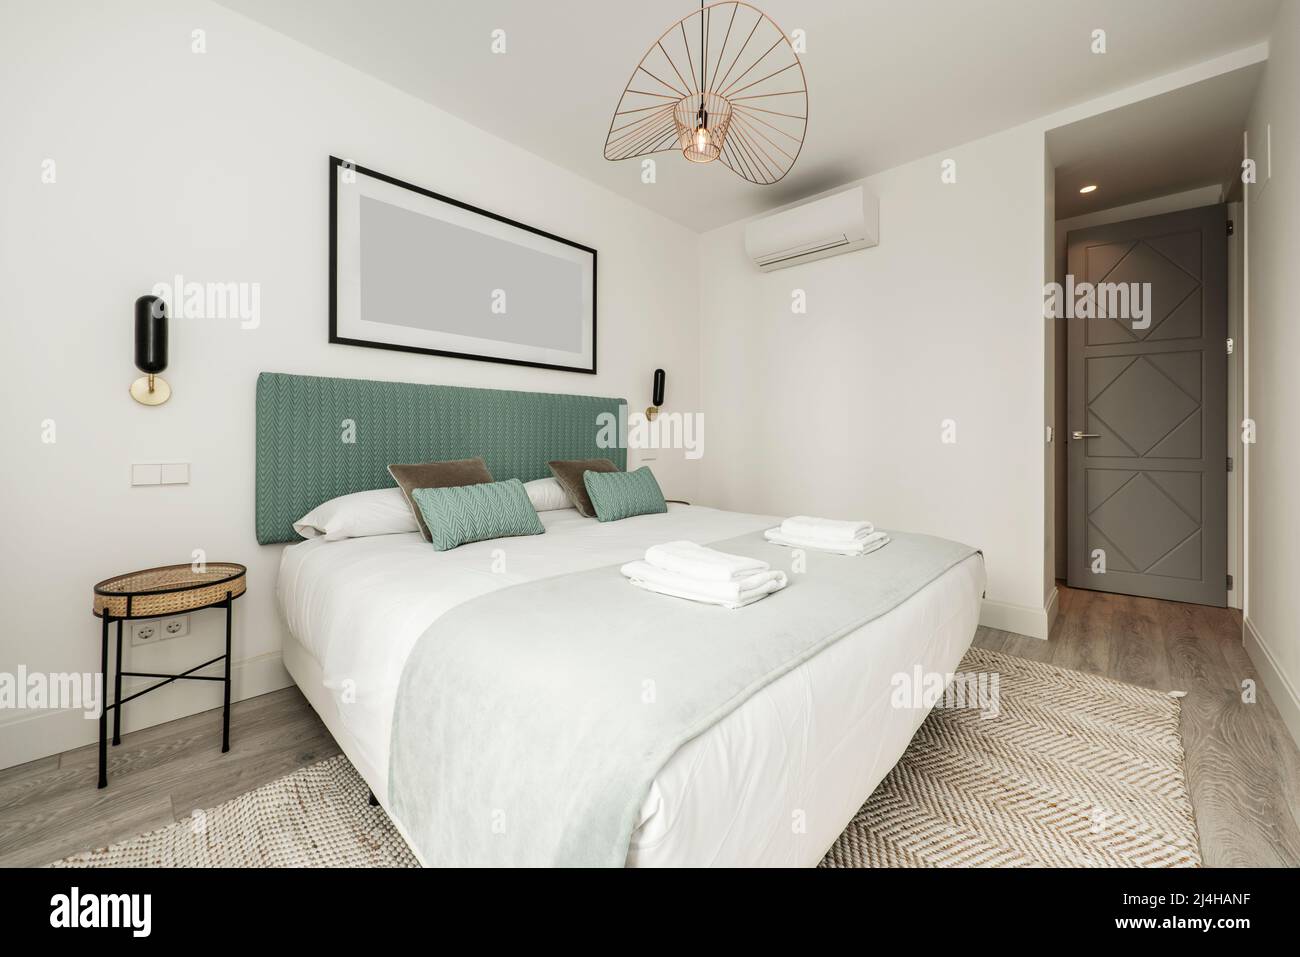 chambre avec lit double avec serviettes pliées blanches, tête de lit capitonnée en tissu bleu, coussins assortis et tapis en denim Banque D'Images